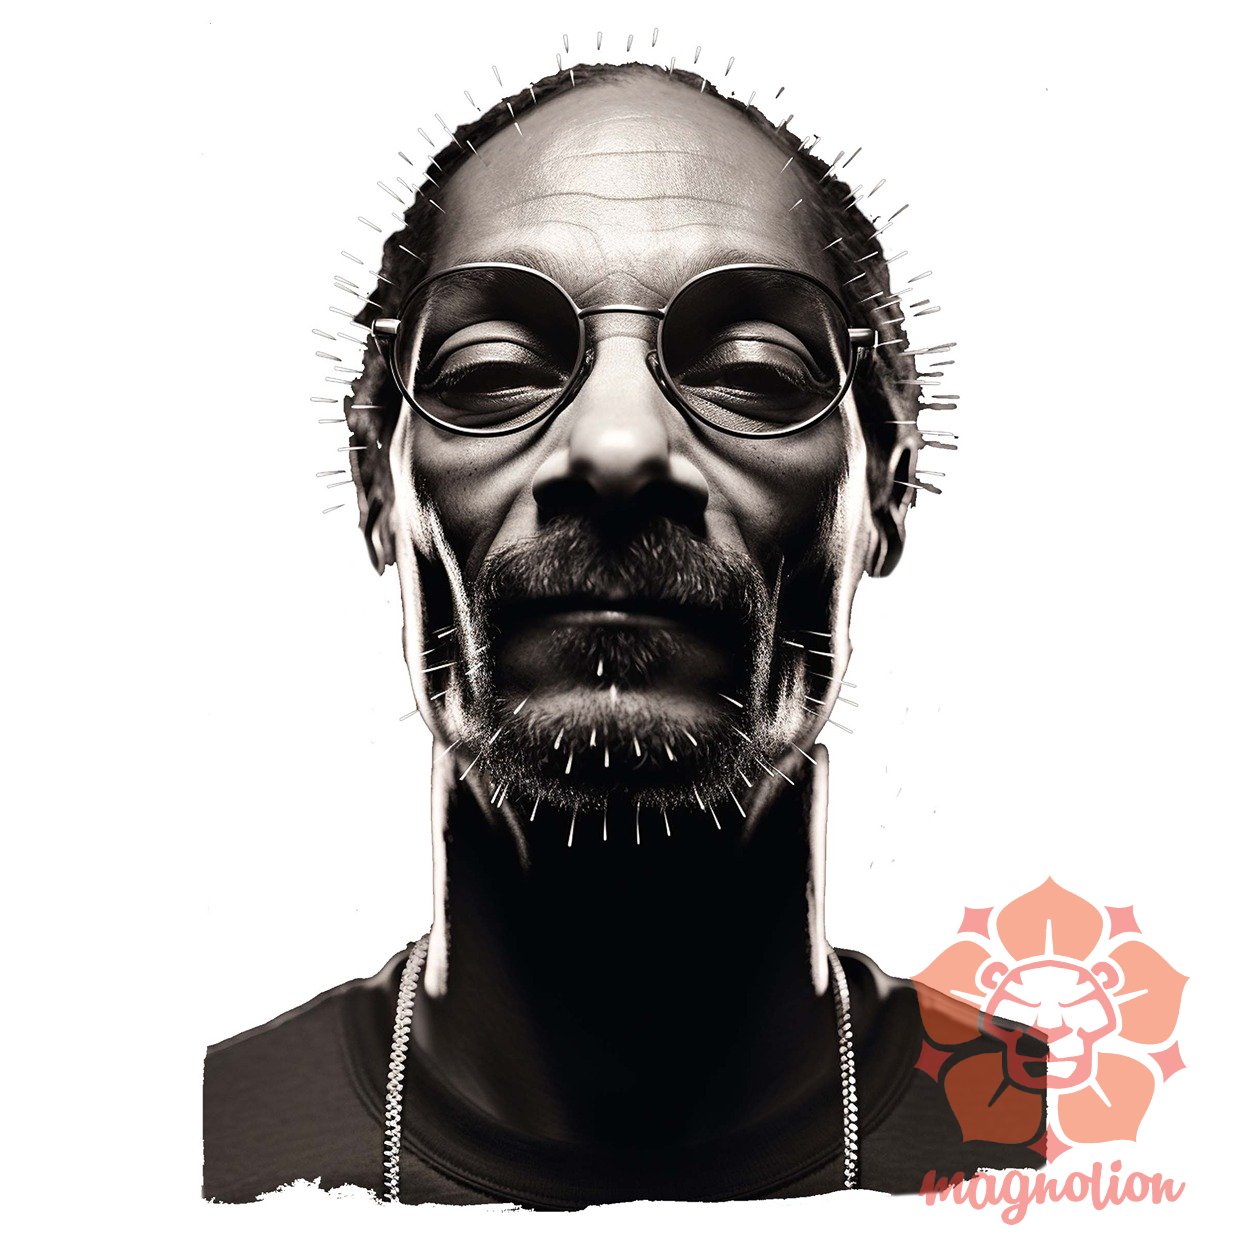 Snoop Dogg v2